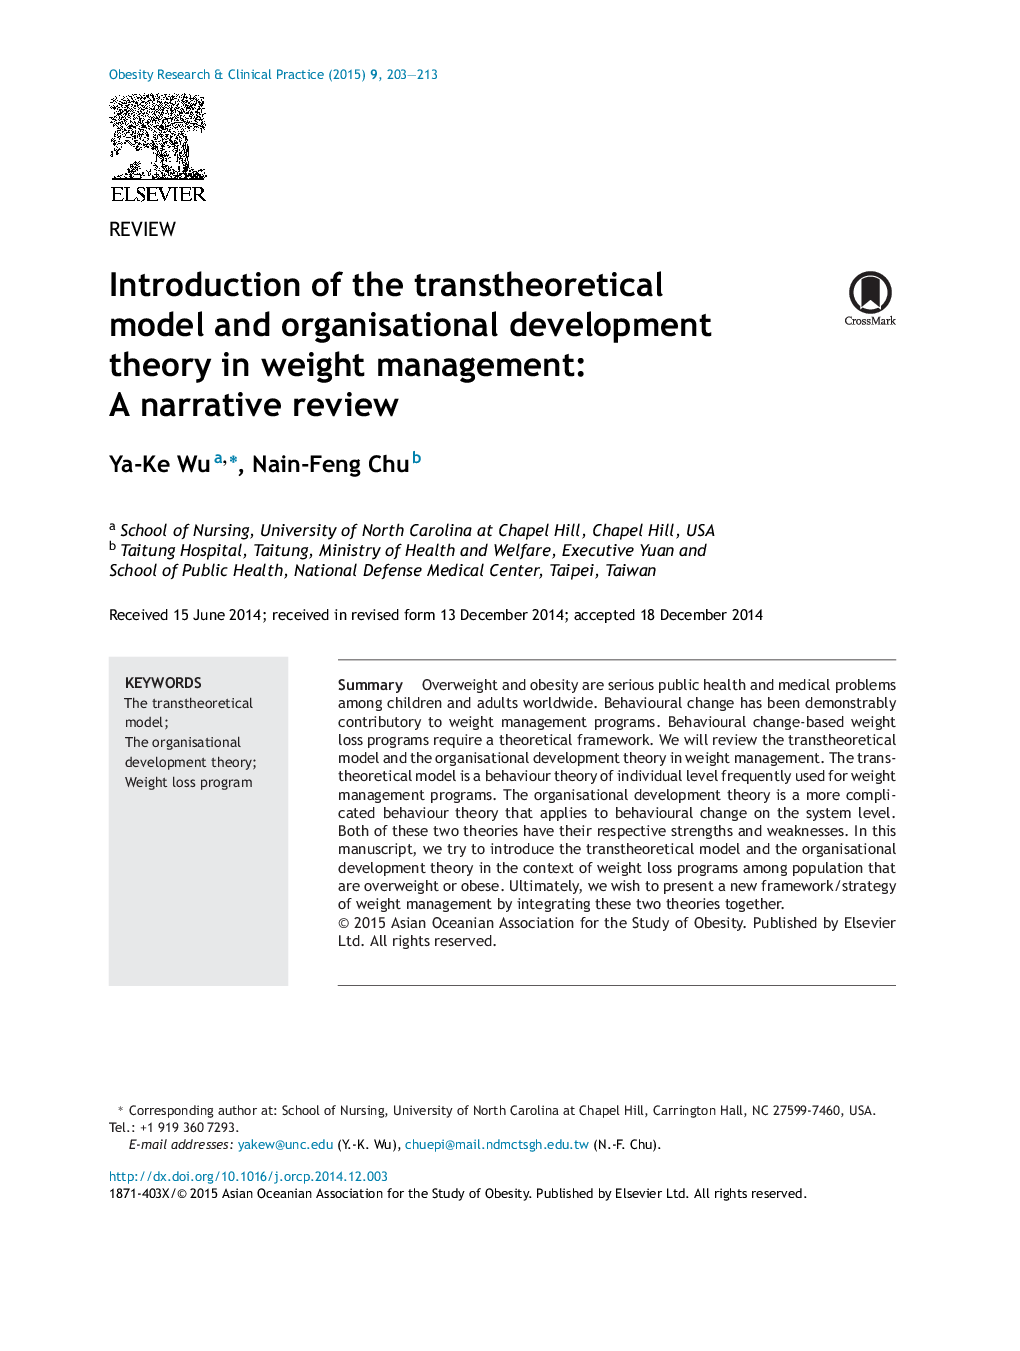 معرفی مدل نظری و تئوری توسعه سازمانی در مدیریت وزن: یک بررسی روایت 